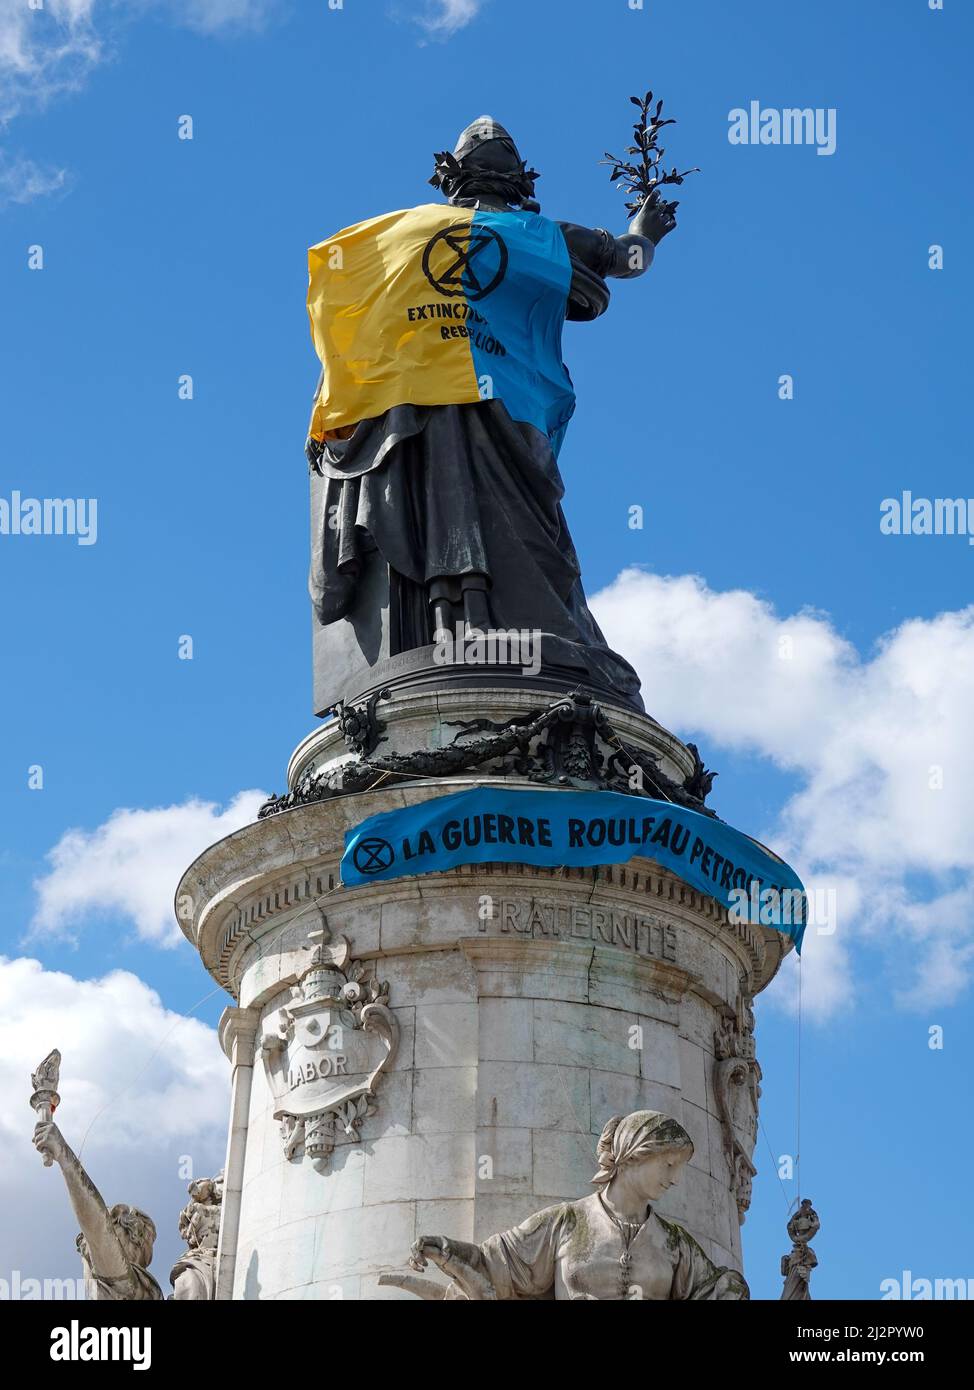 Denkmal für die Republik, geschmückt mit einer gelben und blauen Weste in ukrainischen Flaggen-Farben, zusammen mit dem Symbol des Extinction Rebellion, der internationalen sozialen Umweltbewegung, aus Protest gegen den Krieg in der Ukraine und den übermäßigen Öleinsatz und seine Rolle bei der Zerstörung des Klimas. 2. April 2022, Paris, Frankreich Stockfoto